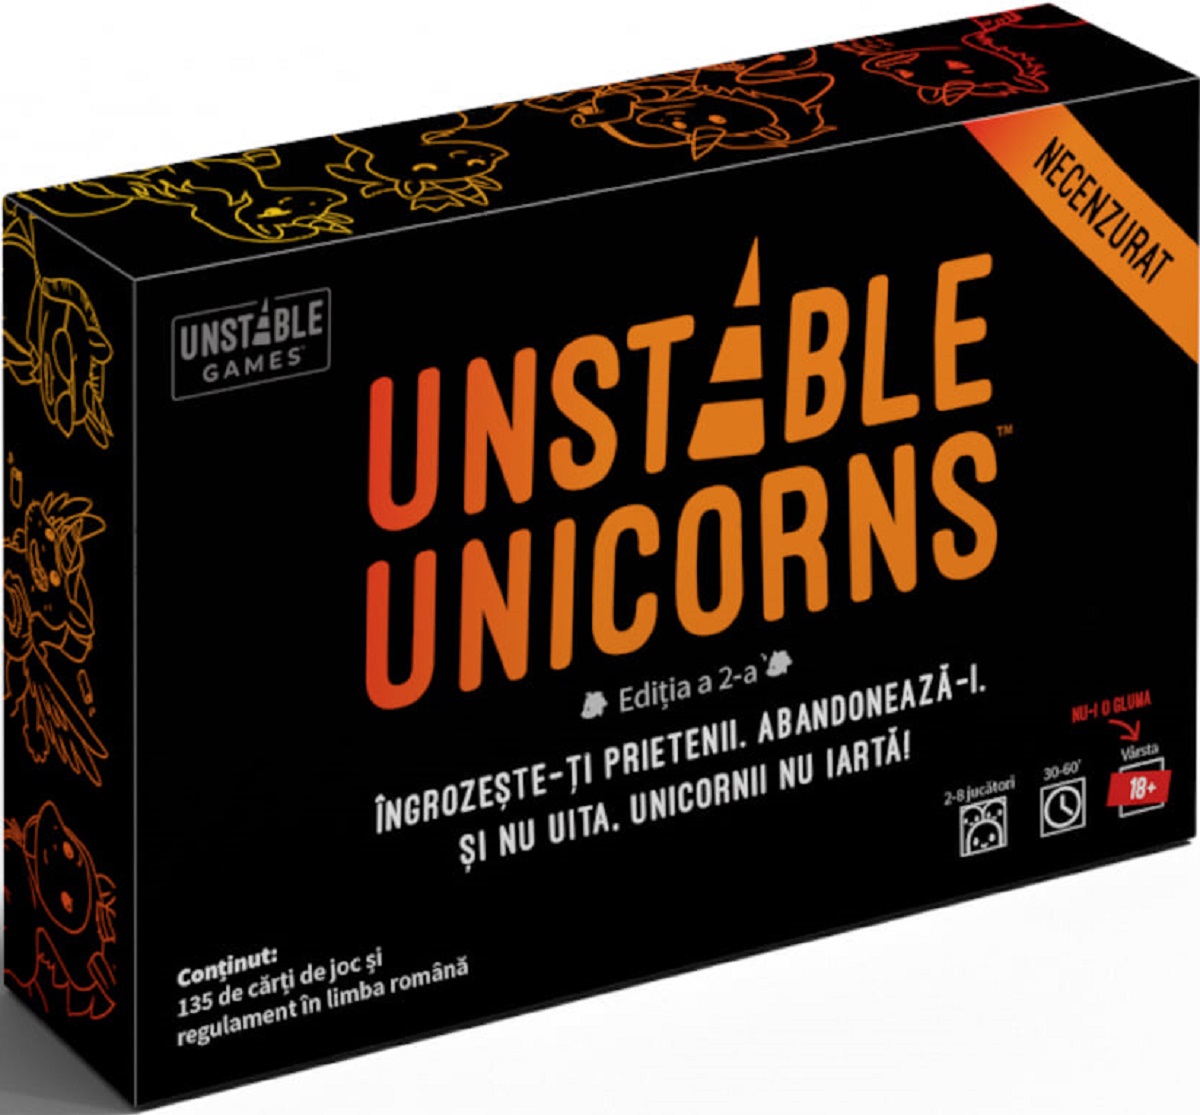 Joc pentru adulti: Unstable Unicorns Necenzurat